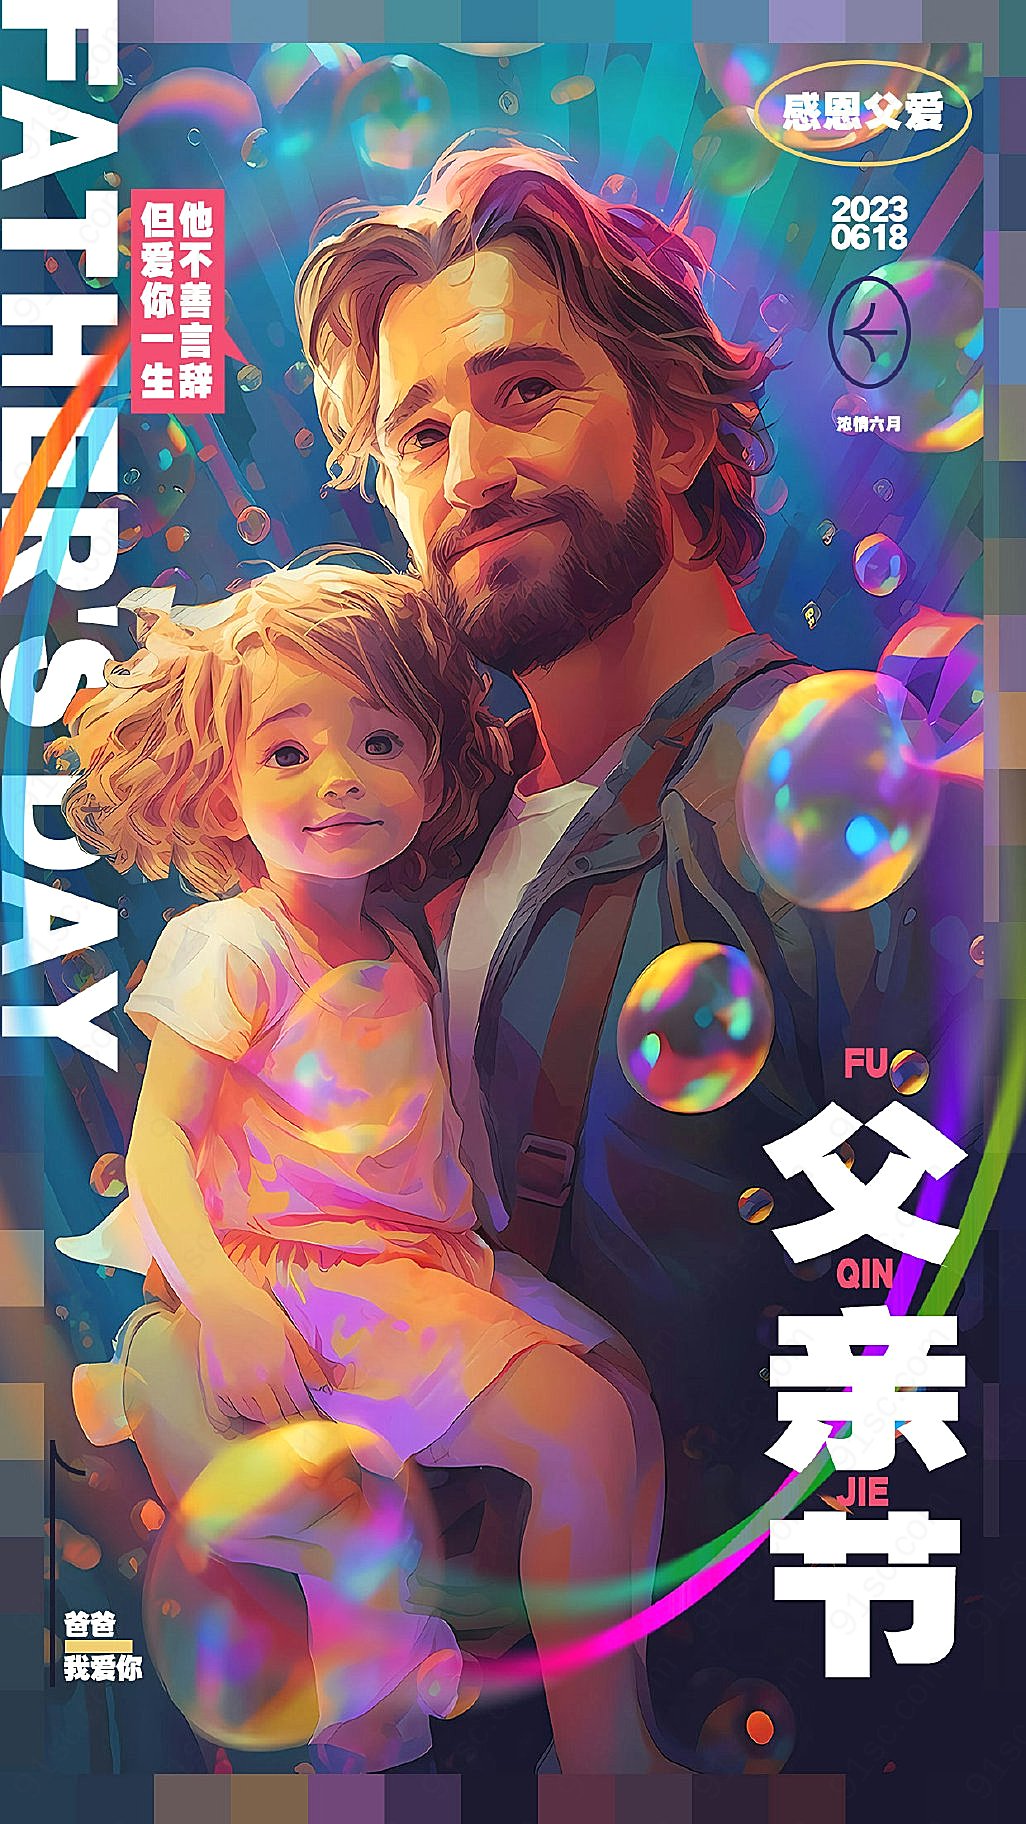 父亲节送一款炫酷的手机海报给最爱的爸爸新媒体用图下载